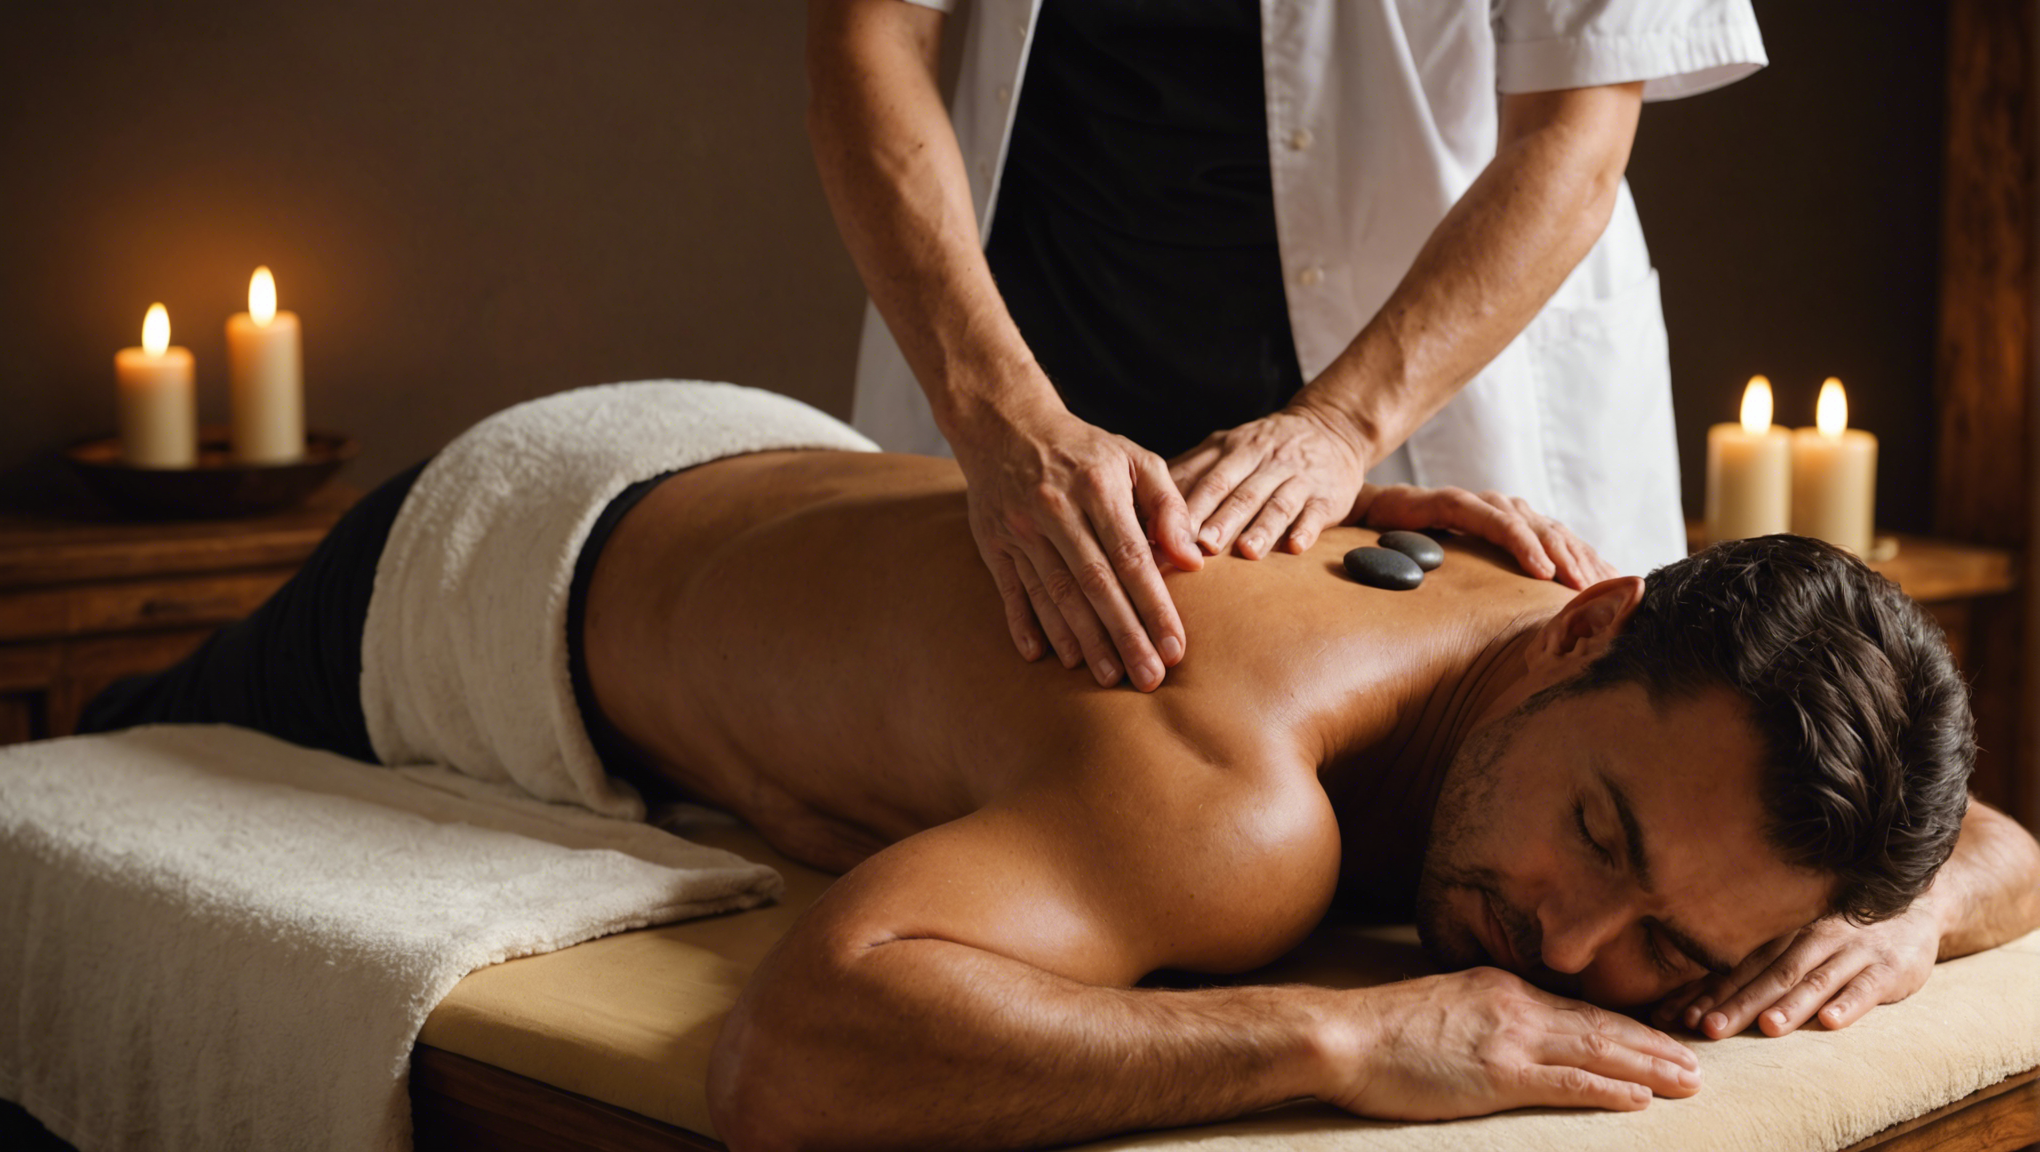 découvrez les nombreux bienfaits du massage tantrique pour la détente, la sensualité et l'épanouissement personnel.